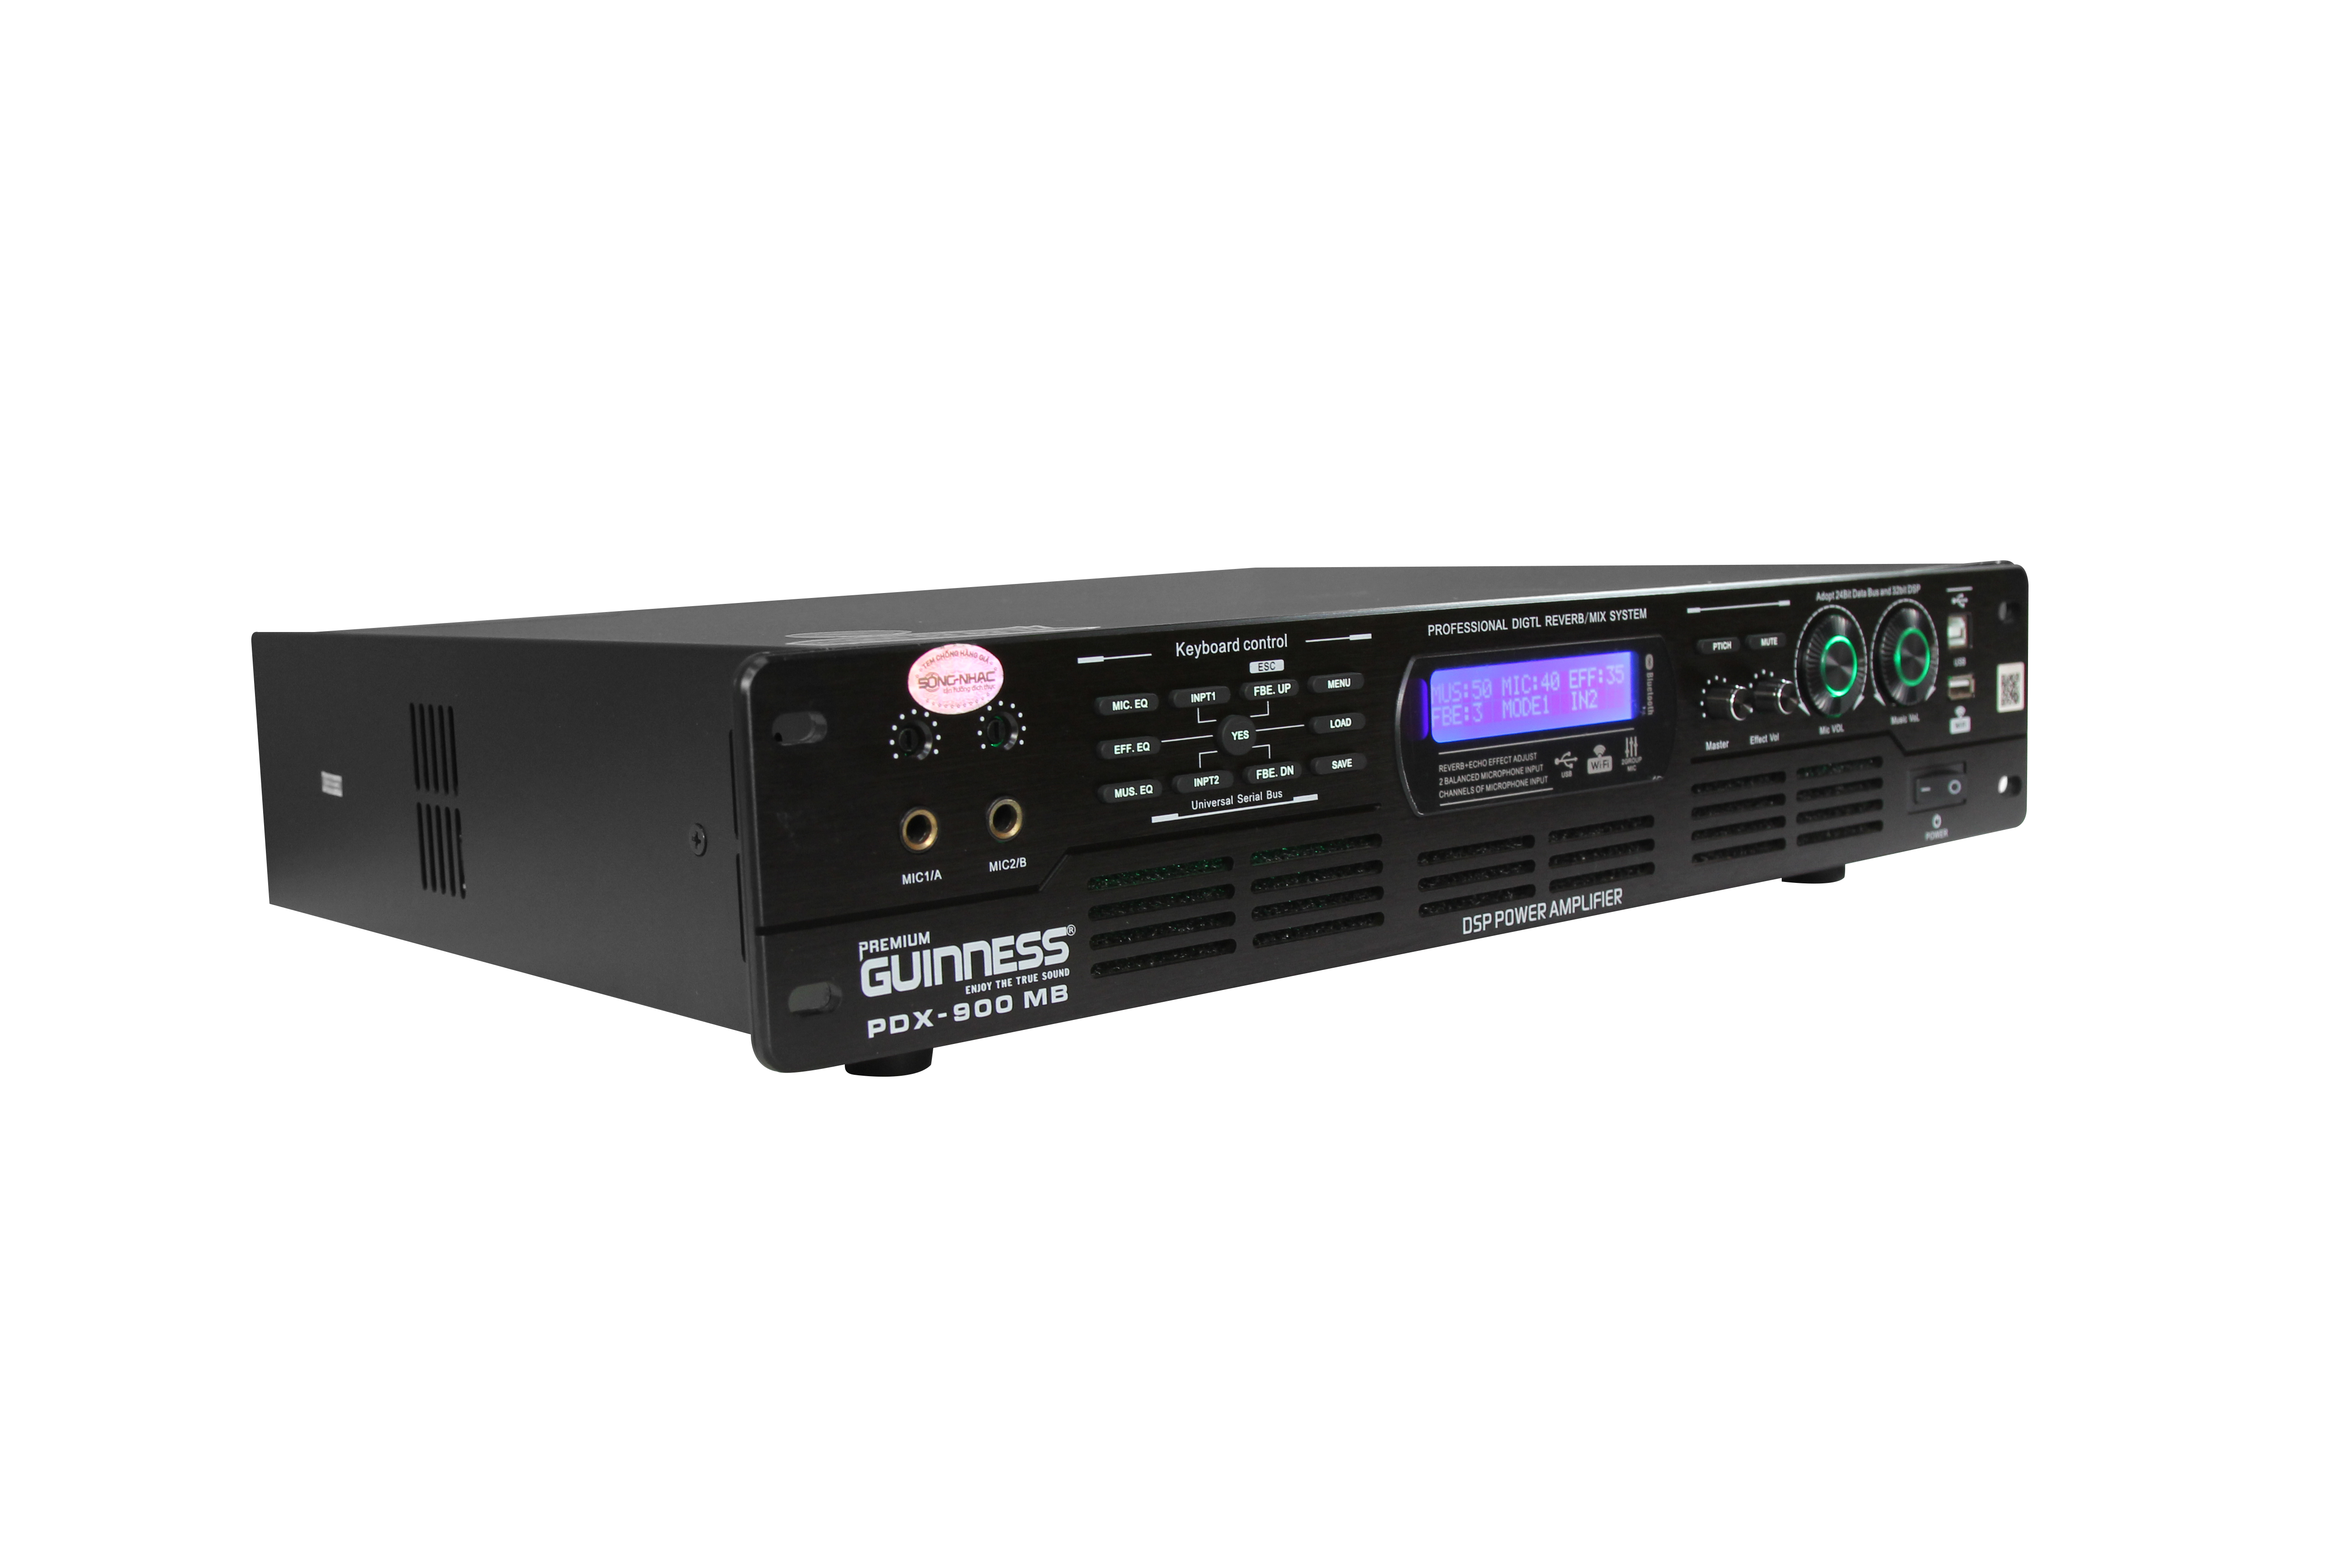 Power Mixer Amplifier - Cục đẩy công suất GUINNESS Premium PDX - 900 MB | Hàng nhập khẩu